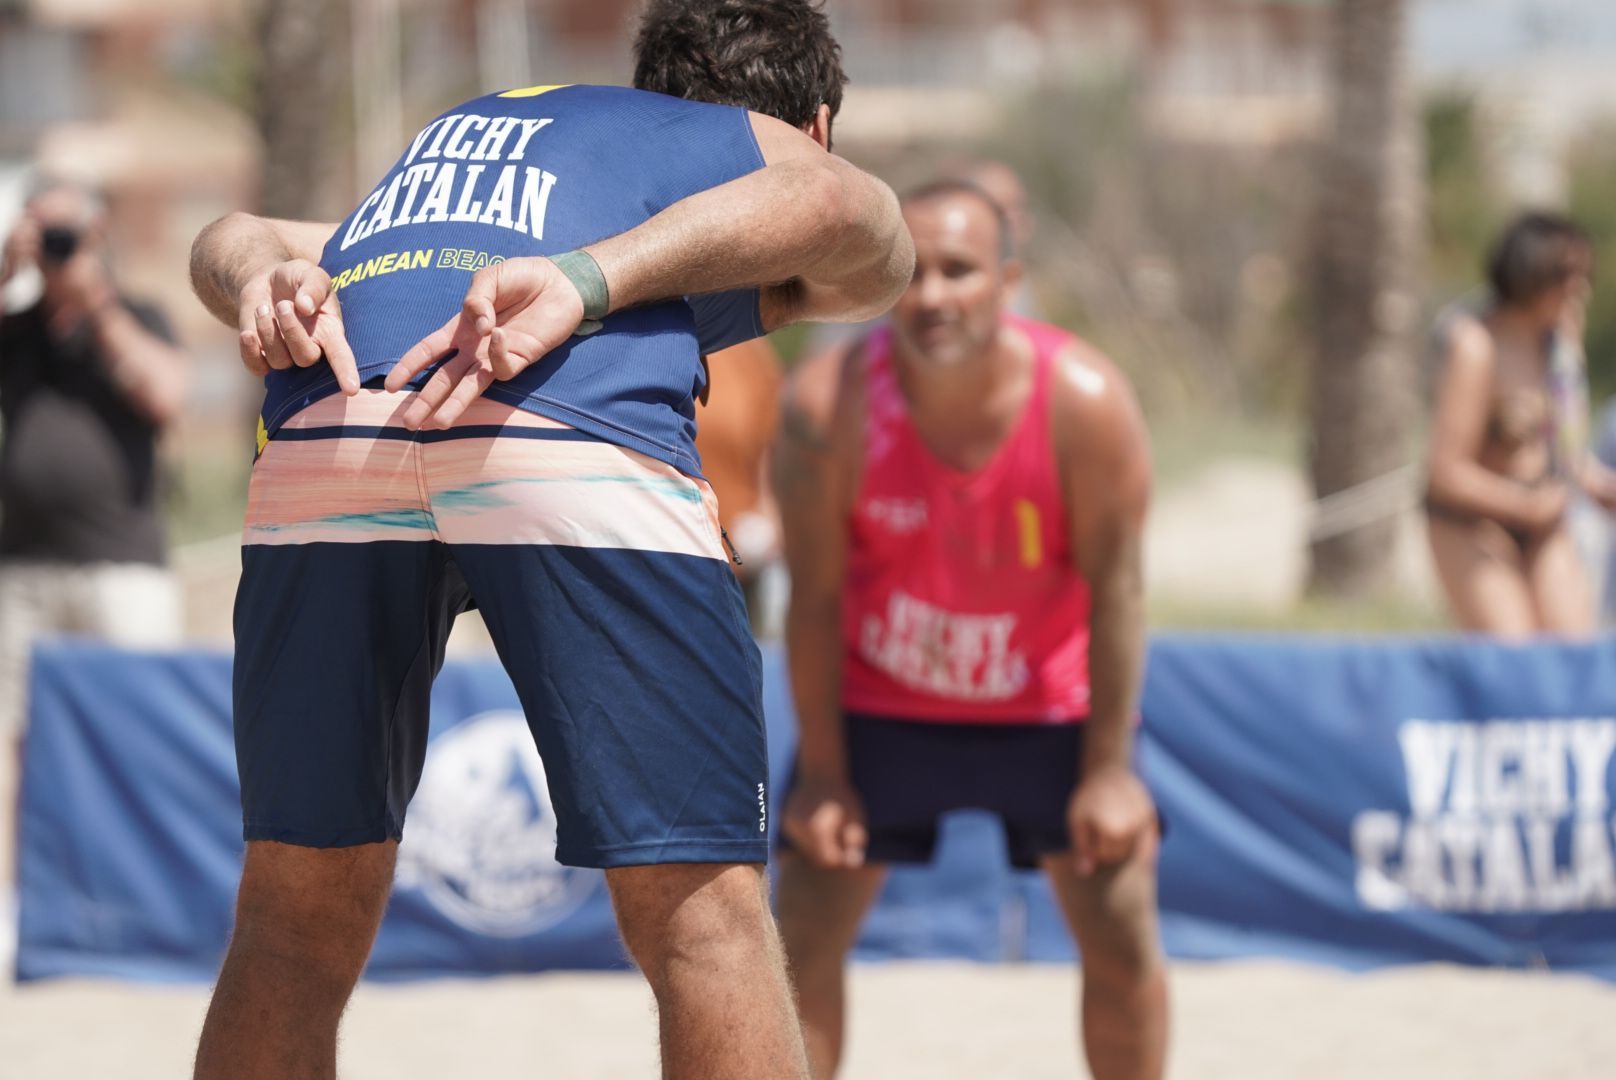 Segunda parada del Circuito 'Vichi Catalan' Mediterranean Beach Volley